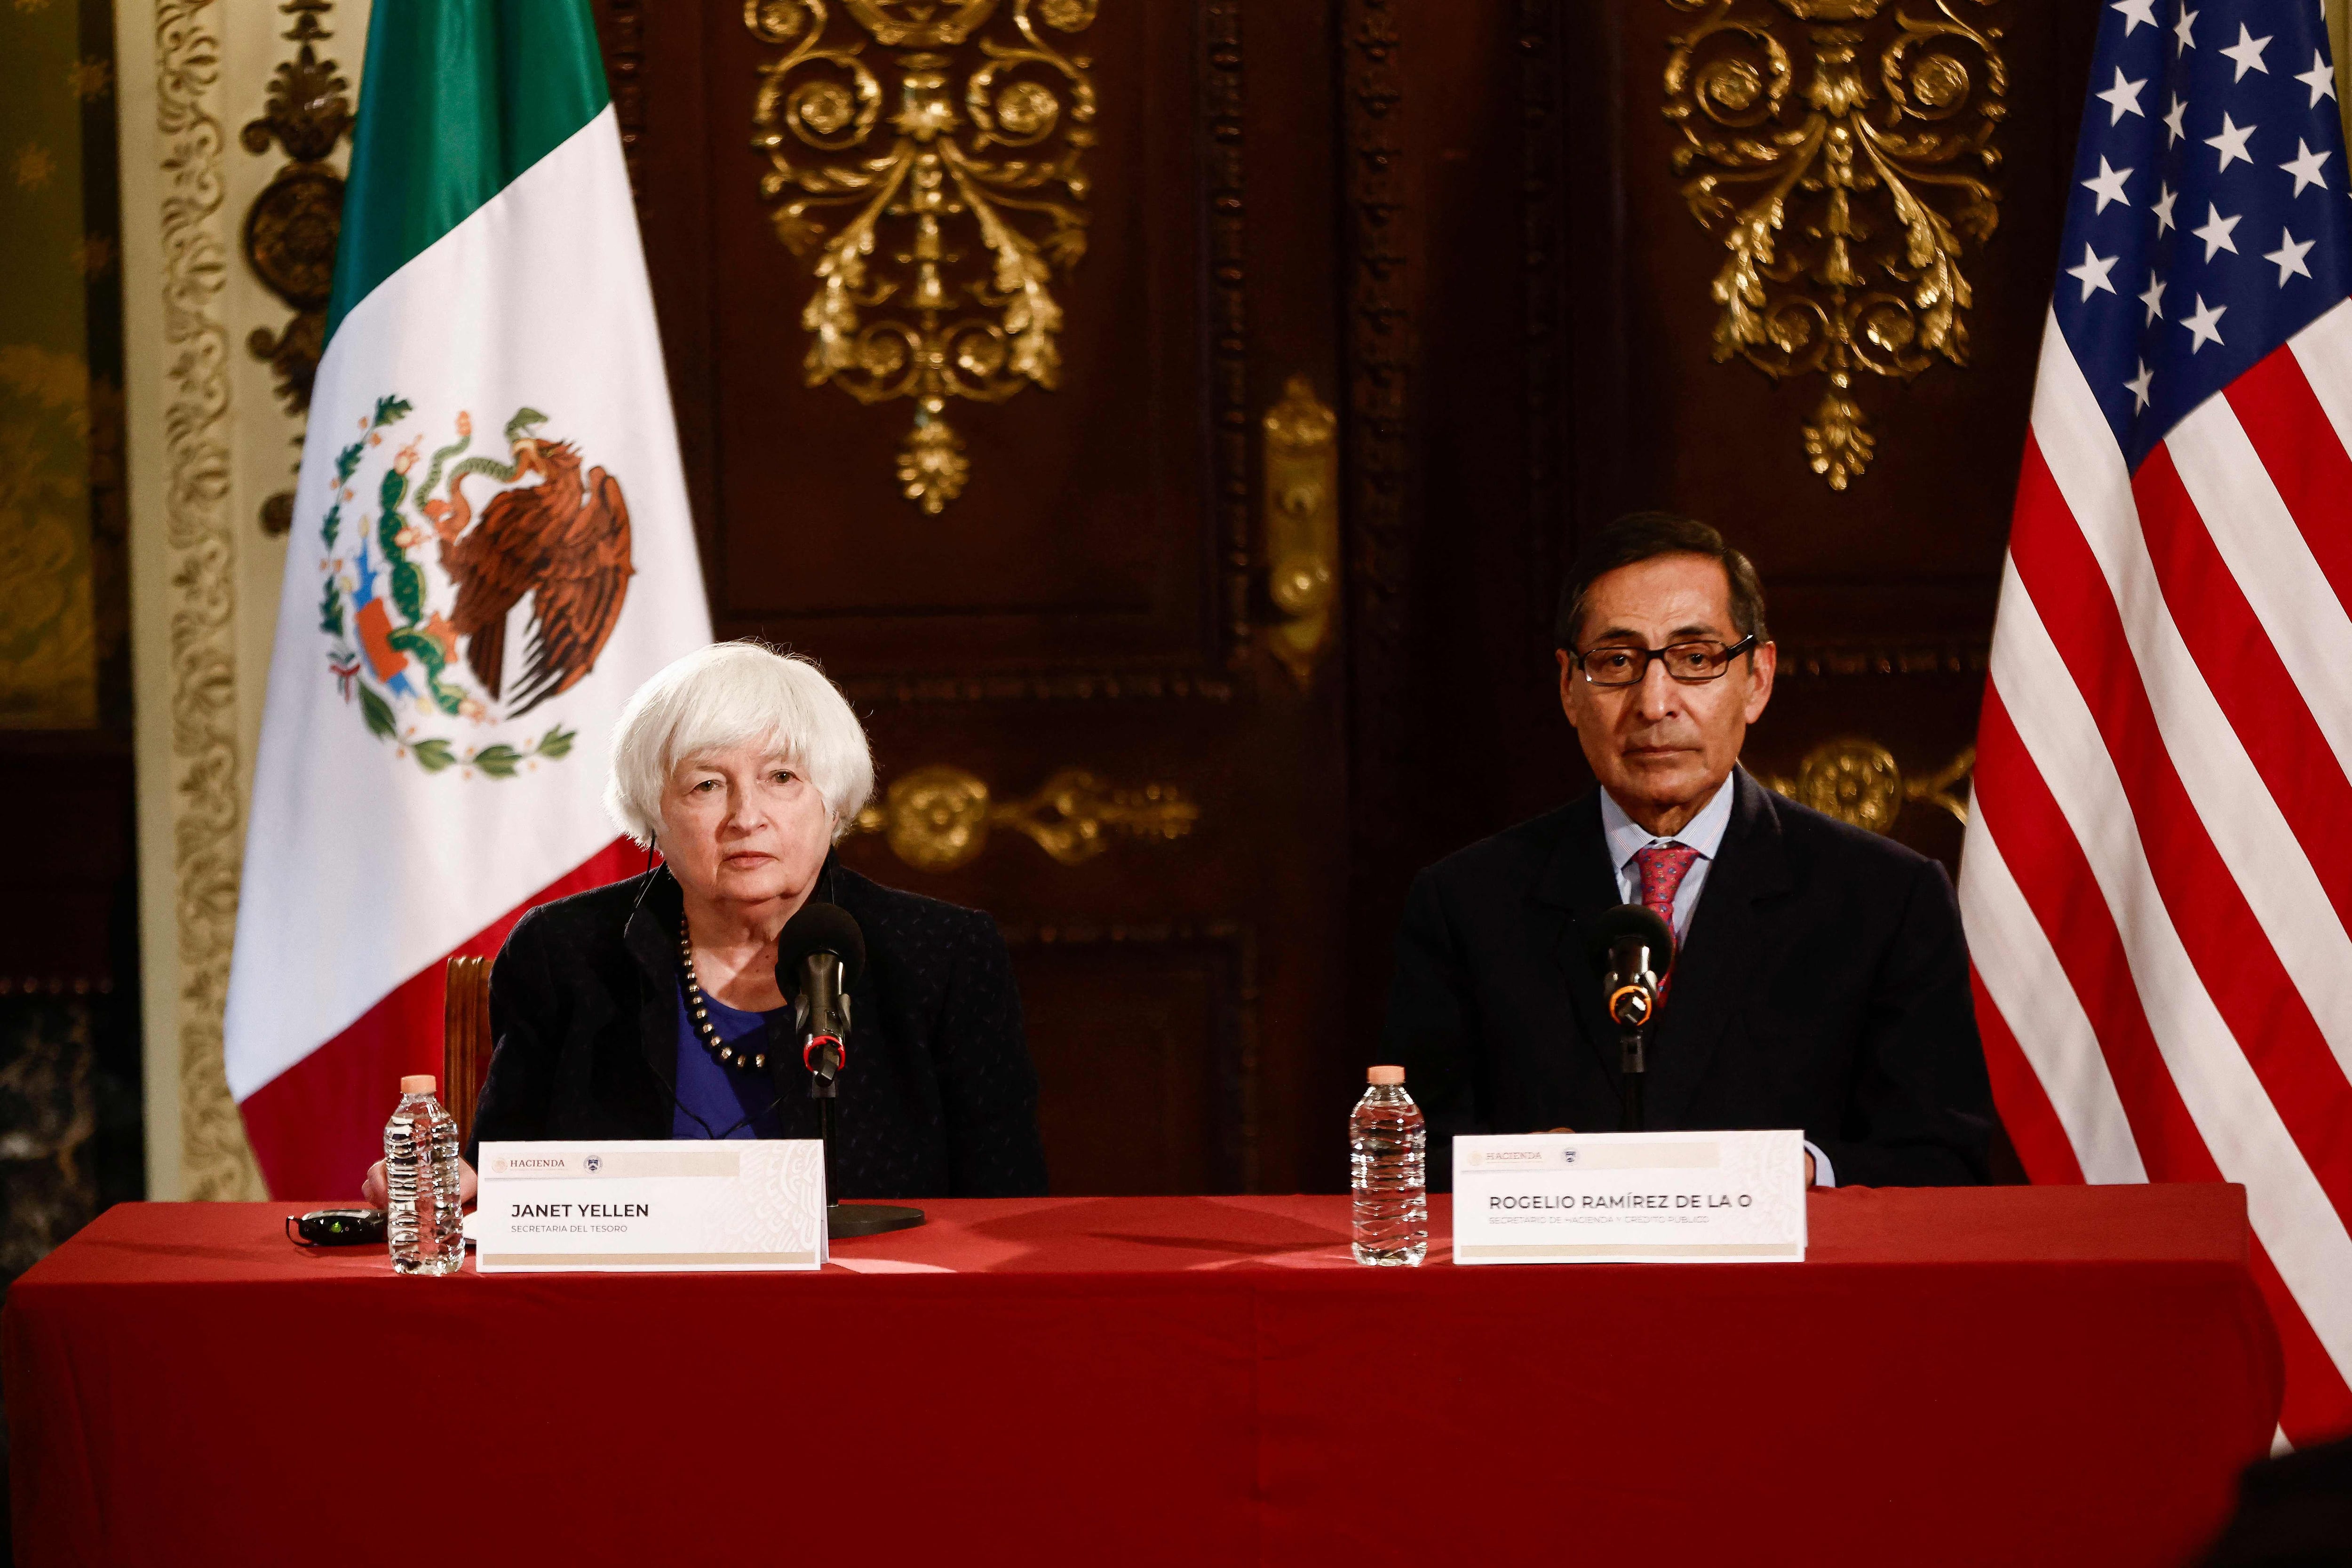 La secretaria del Tesoro de Estados Unidos, Janet Yellen (i), participa en una reunión bilateral con el secretario de Hacienda y Crédito Público de México, Rogelio Ramírez de la O, en el Palacio Nacional de la Ciudad de México. Fotografía: